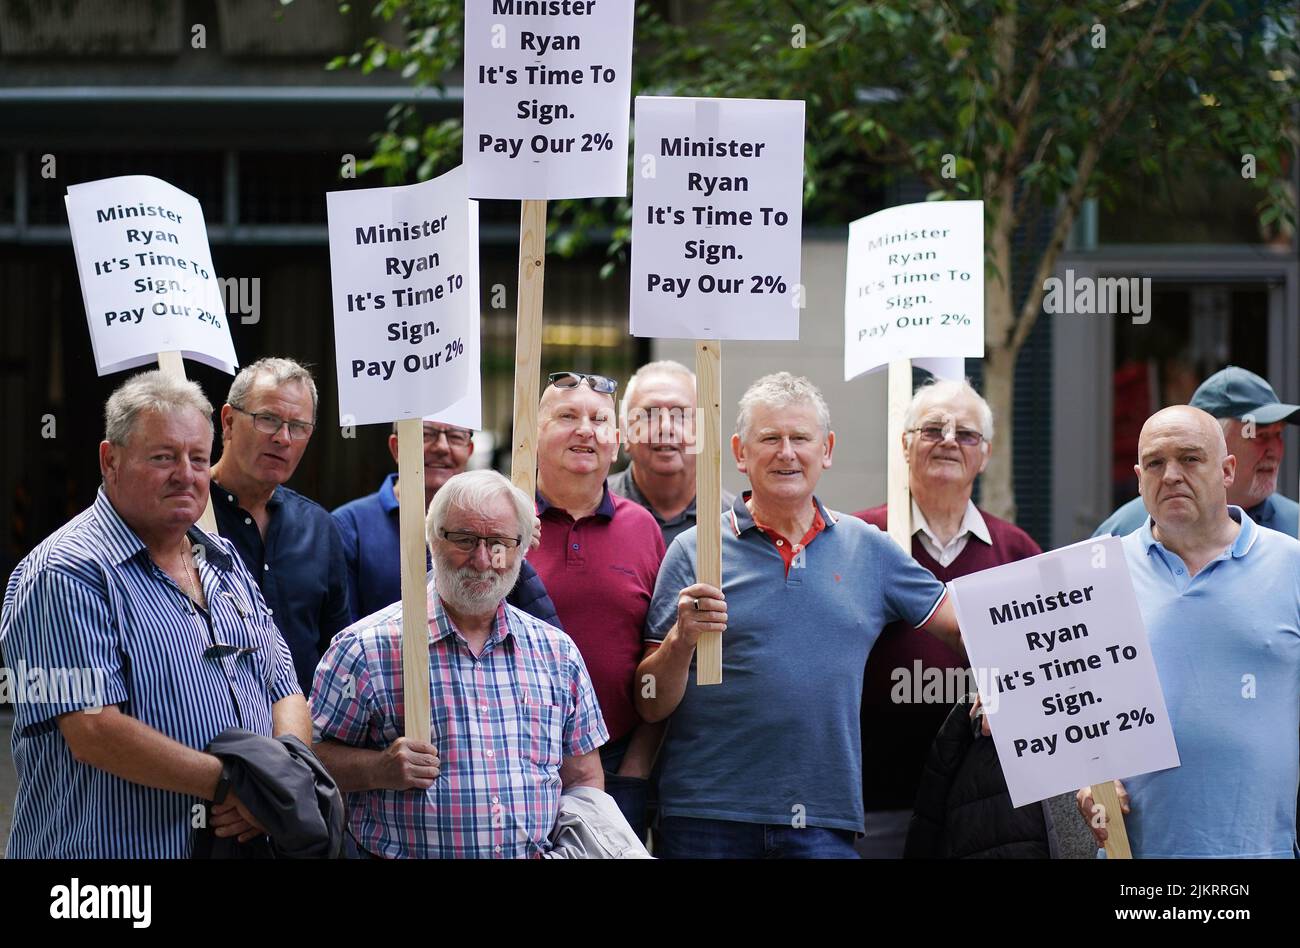 An Post-Rentner und -Unterstützer protestieren vor dem Ministerium für Umwelt, Klima und Kommunikation in Dublin, um zu fordern, dass Minister Eamon Ryan sofort eine Gehaltserhöhung von 2 % unterschreibt. Bilddatum: Mittwoch, 3. August 2022. Stockfoto